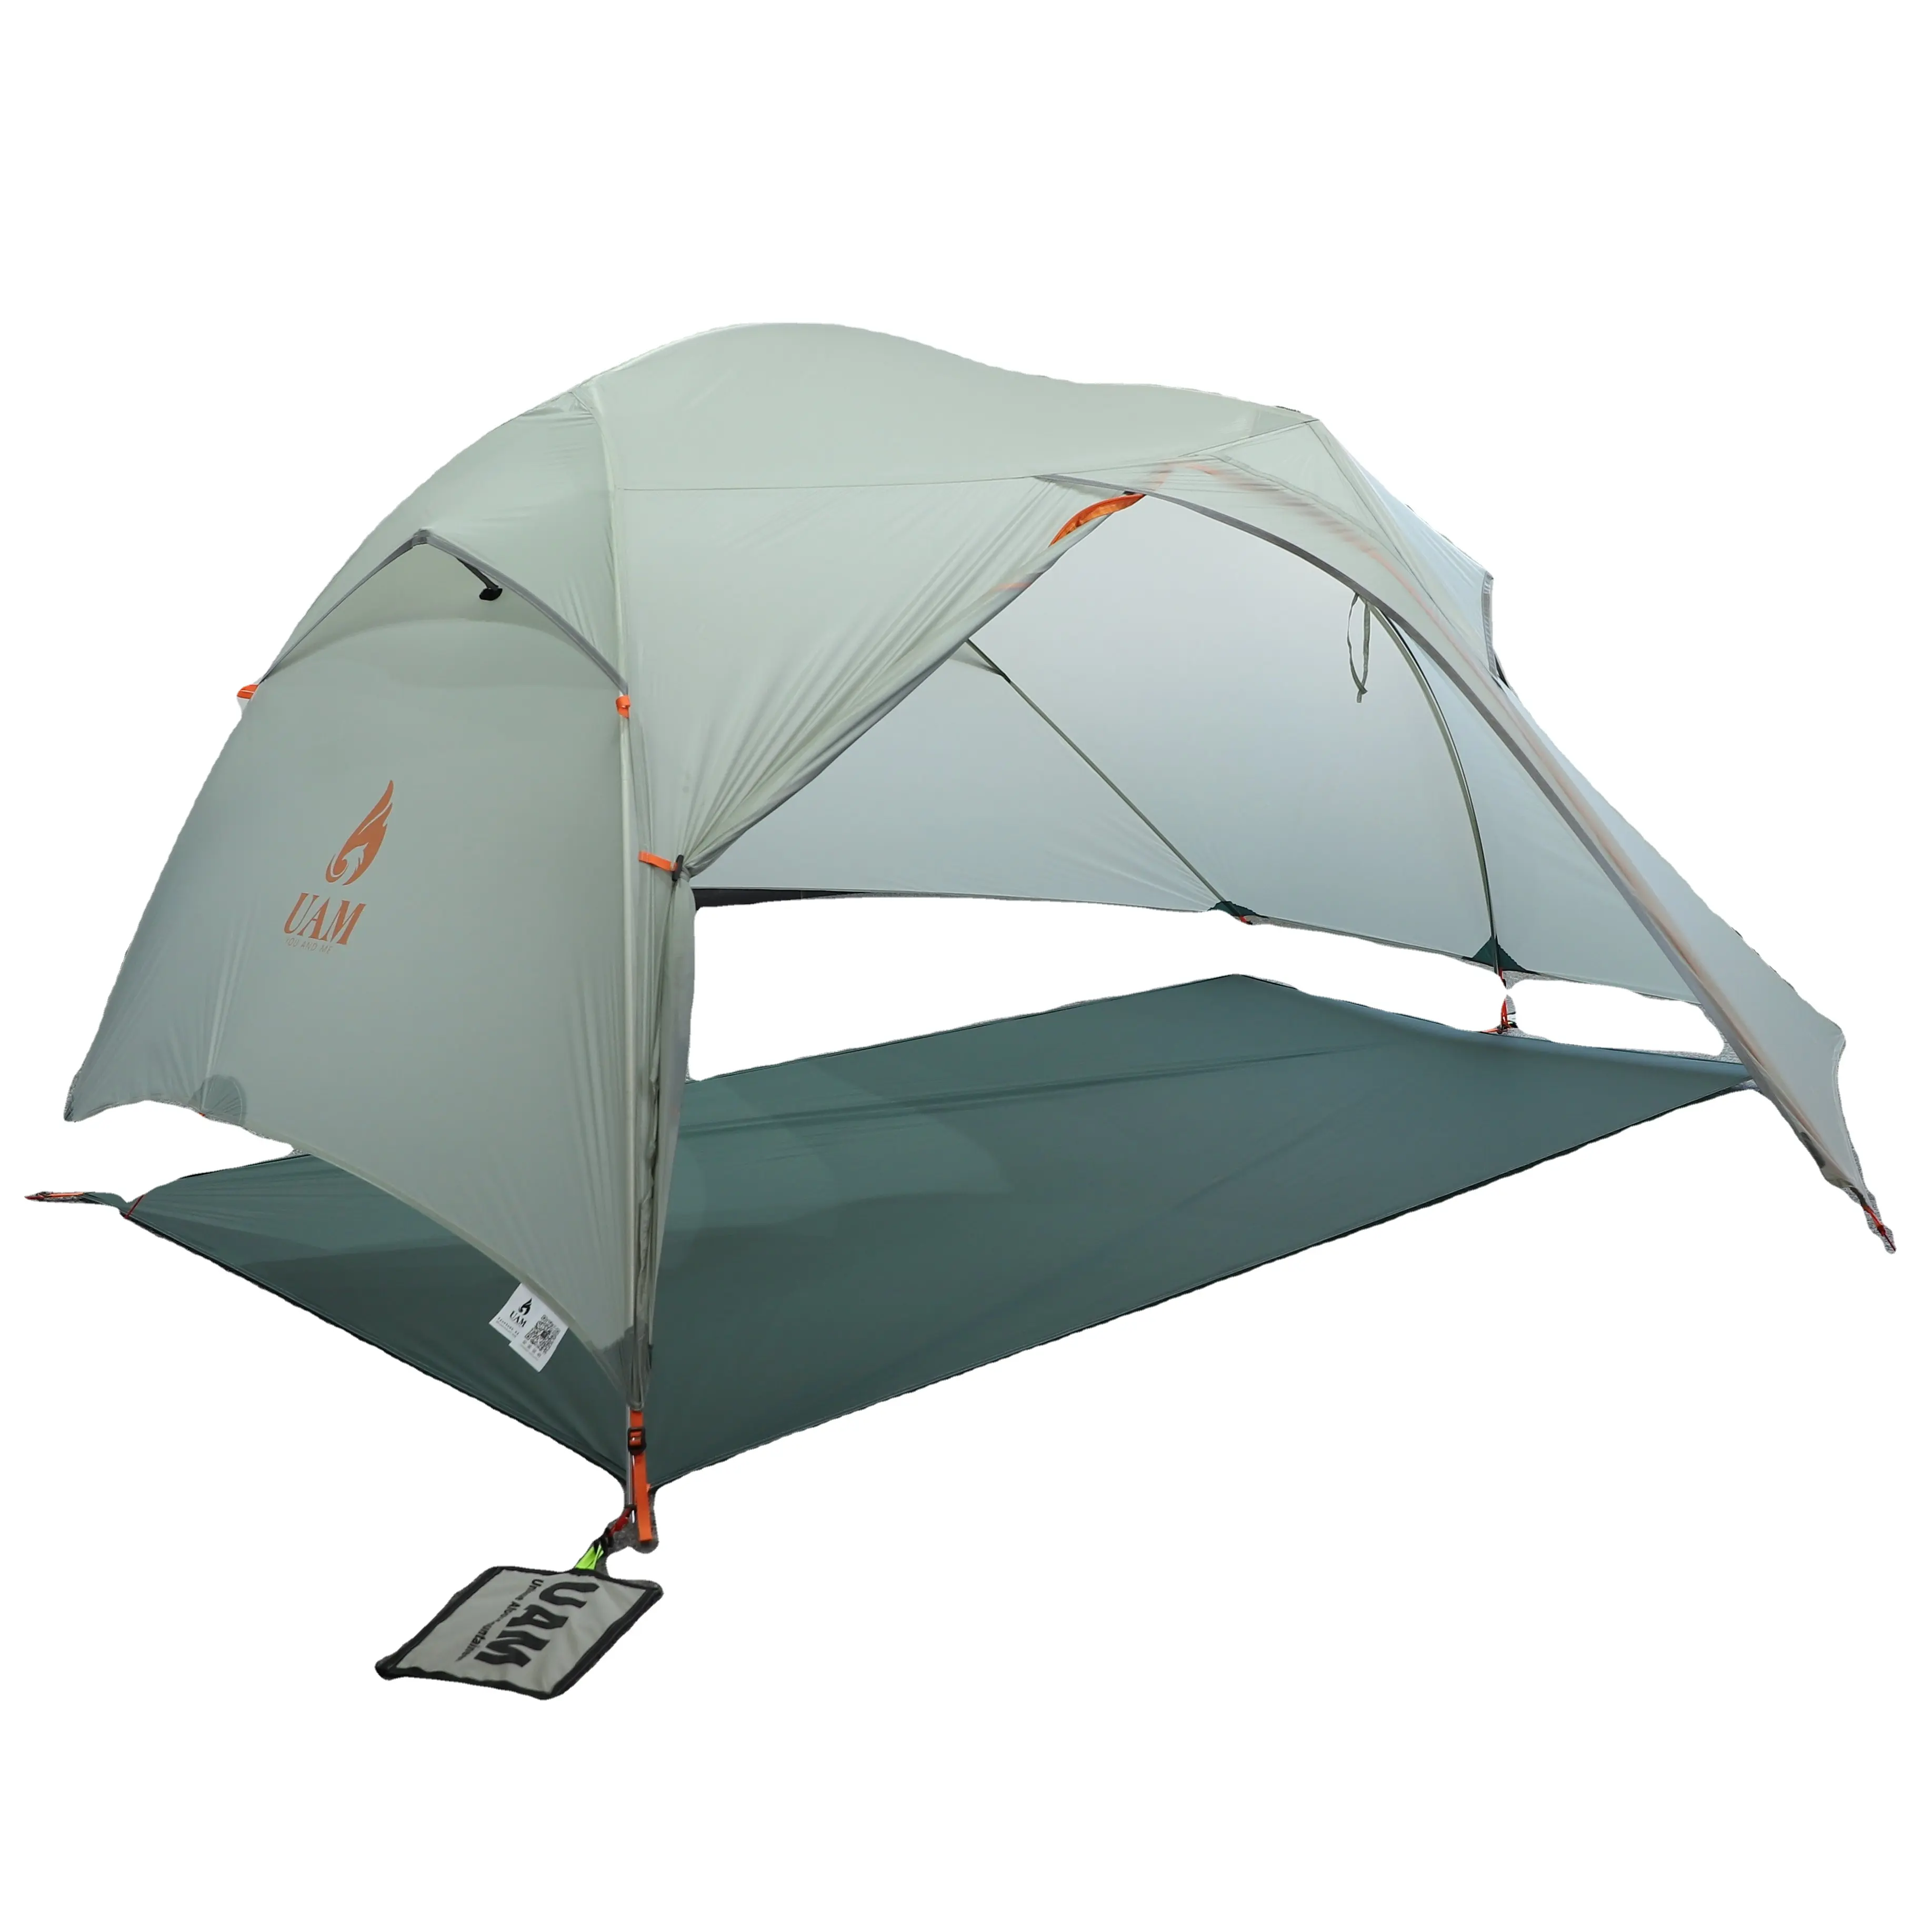 Barraca de acampamento eua amazon 4 season 20d, tenda de nylon com pegada para 2 pessoas, montanha de alumínio leve e ultraleve